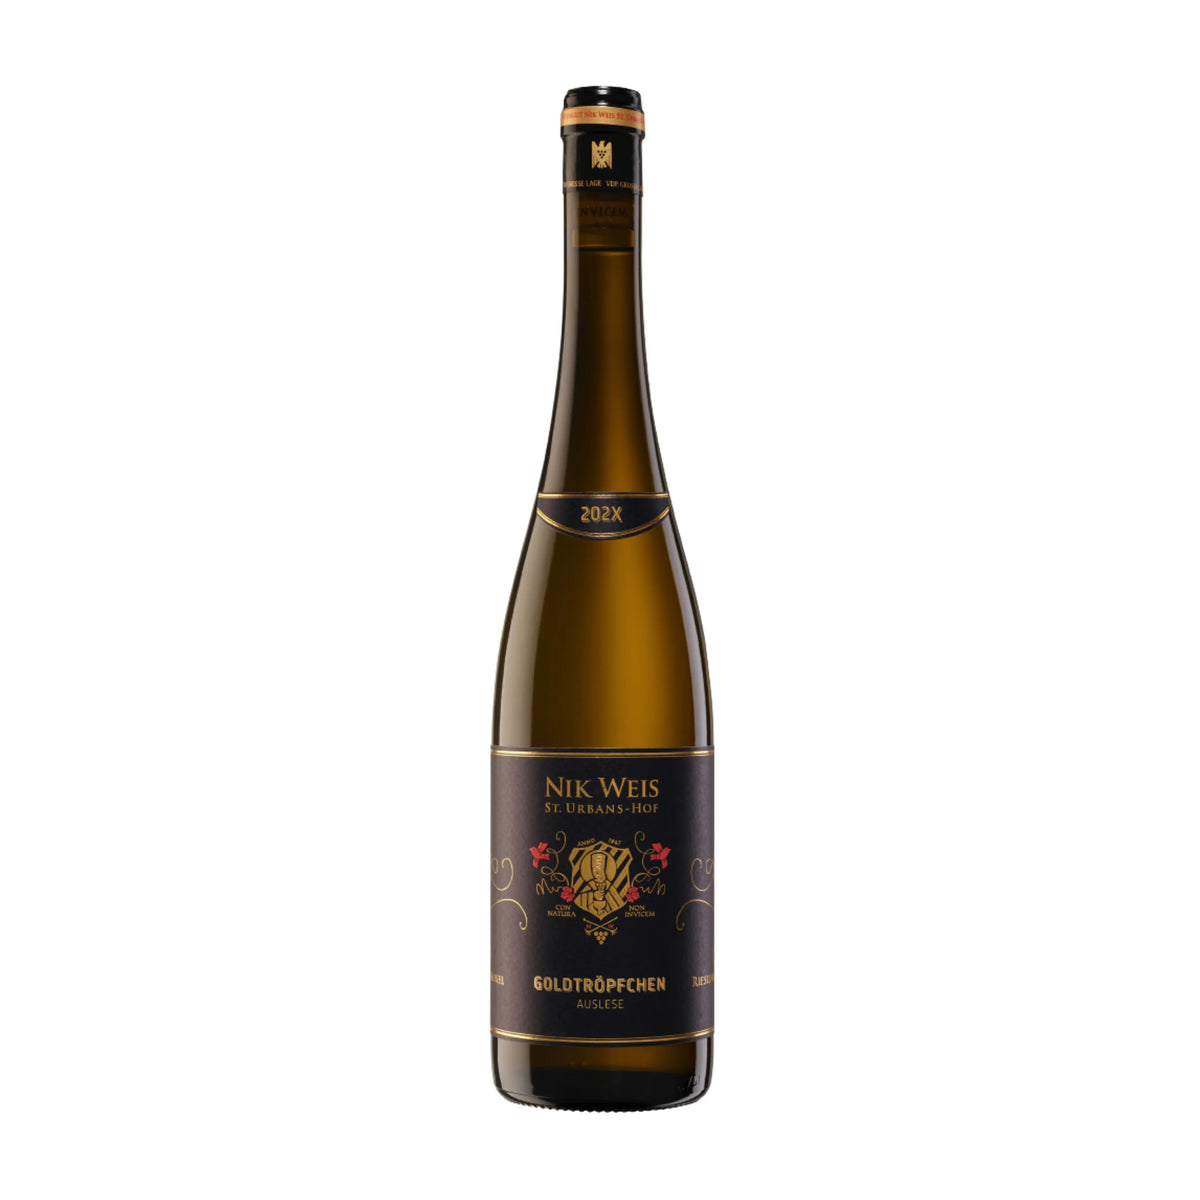 Weingut Nik Weis St. Urbans-Hof-Weißwein-Riesling-2019 Goldtröpfchen Auslese-WINECOM